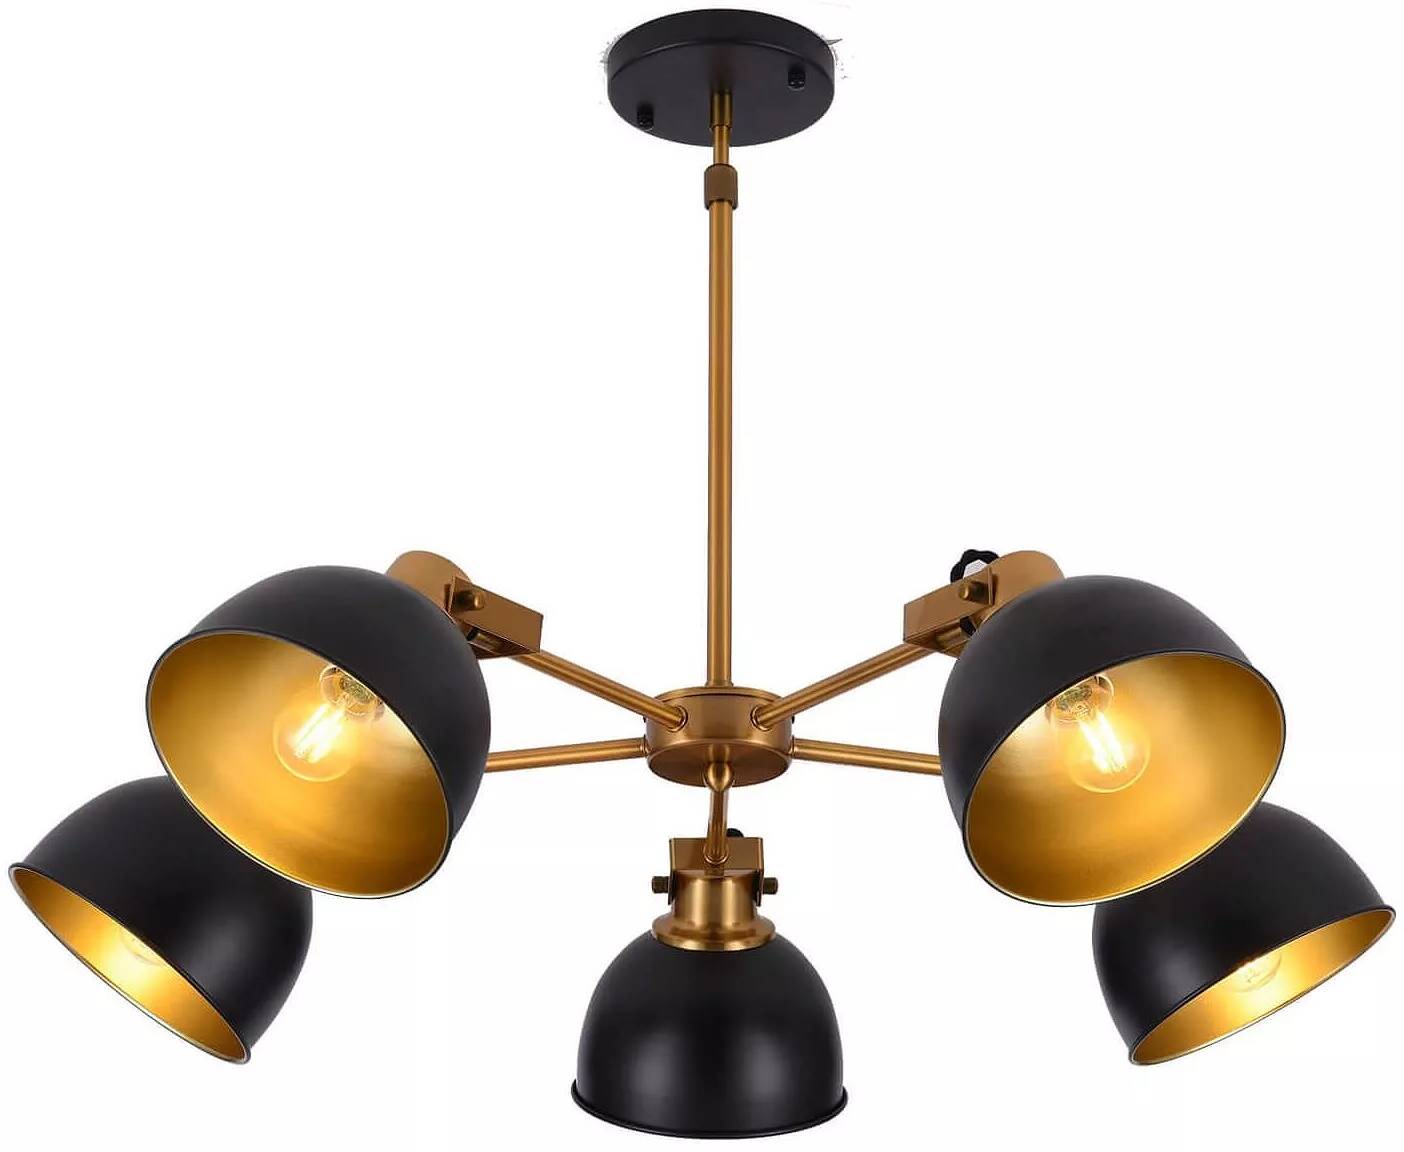 Lampe suspension en métal noir et doré Ø70